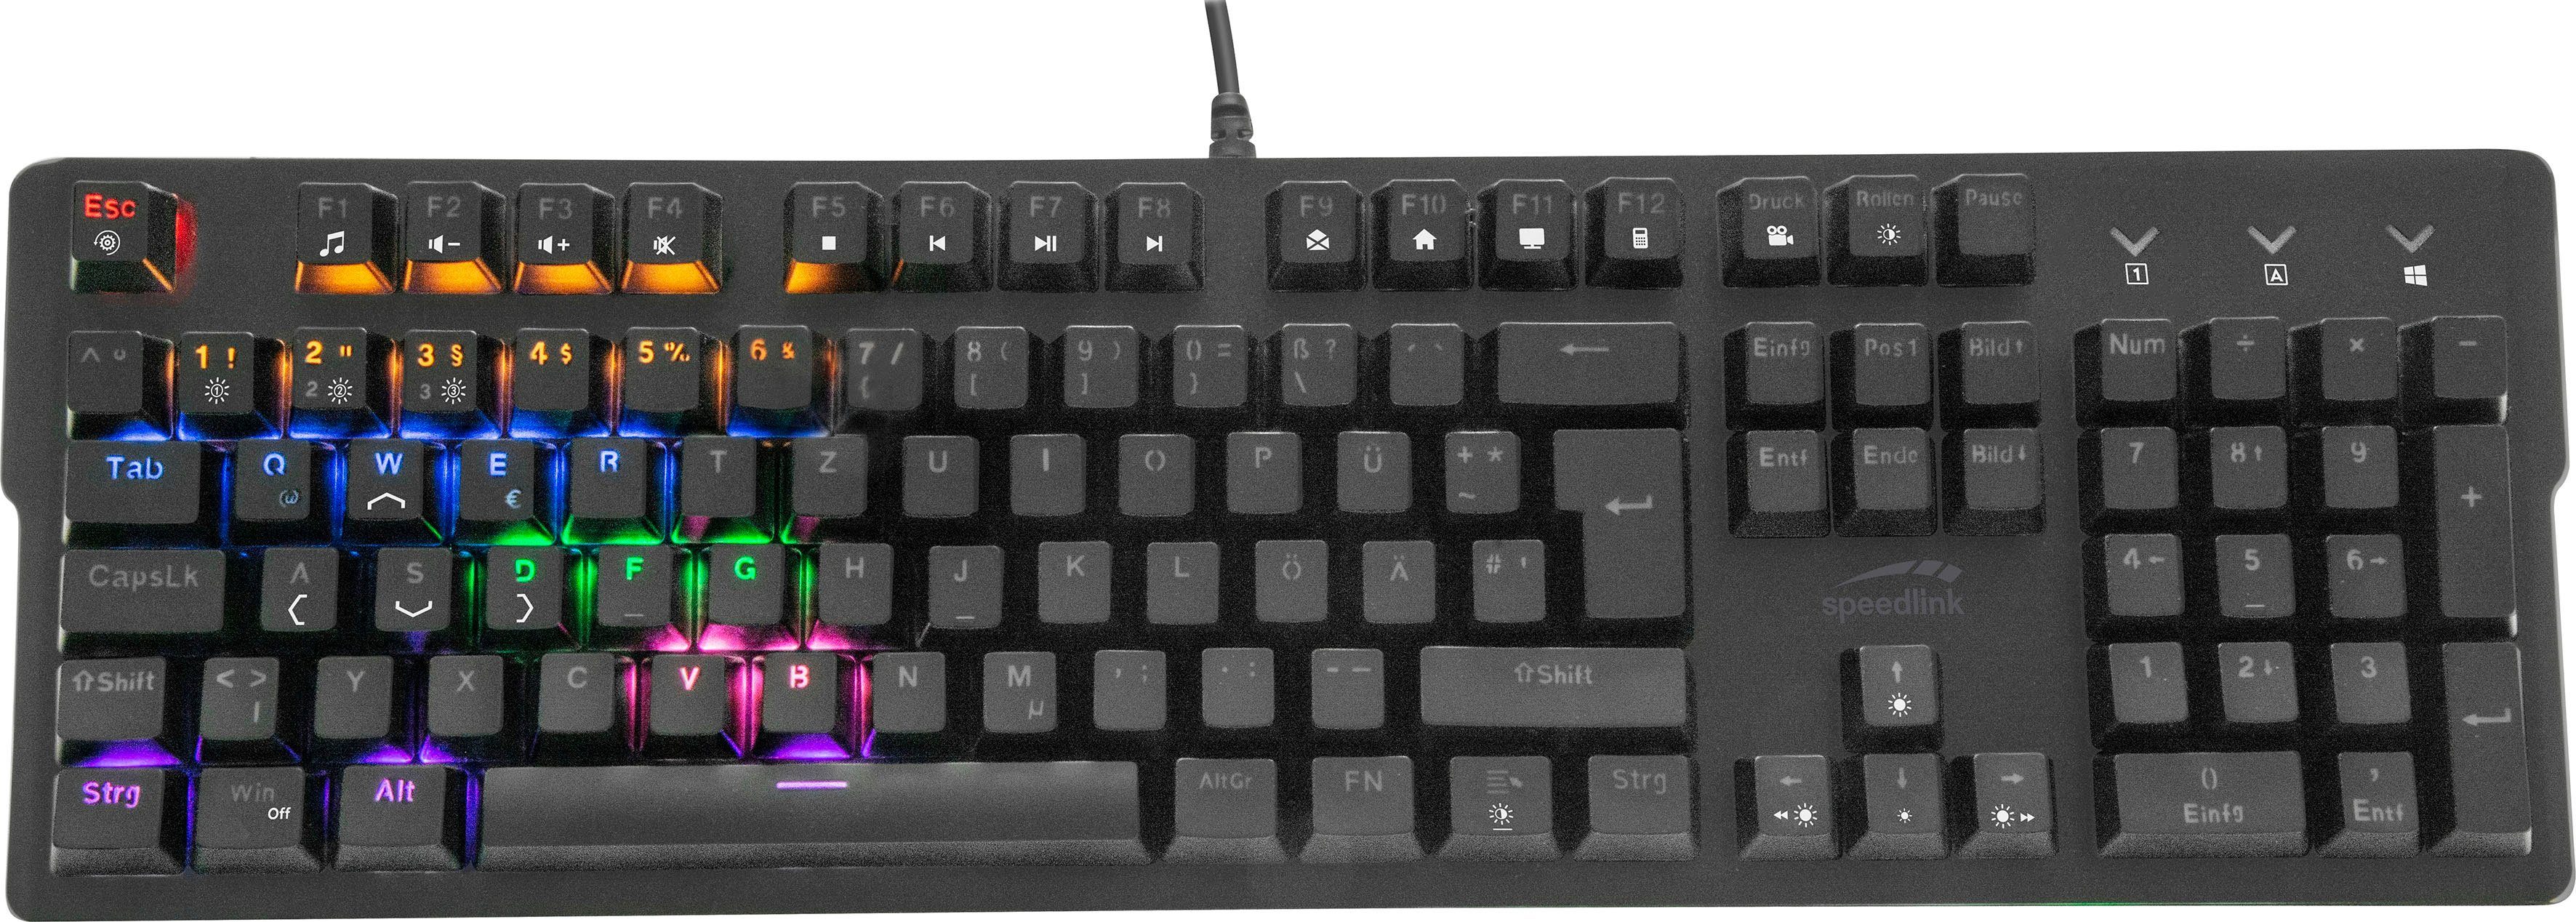 Speedlink VELA LED mechanisch Gaming-Tastatur (mechanisch)